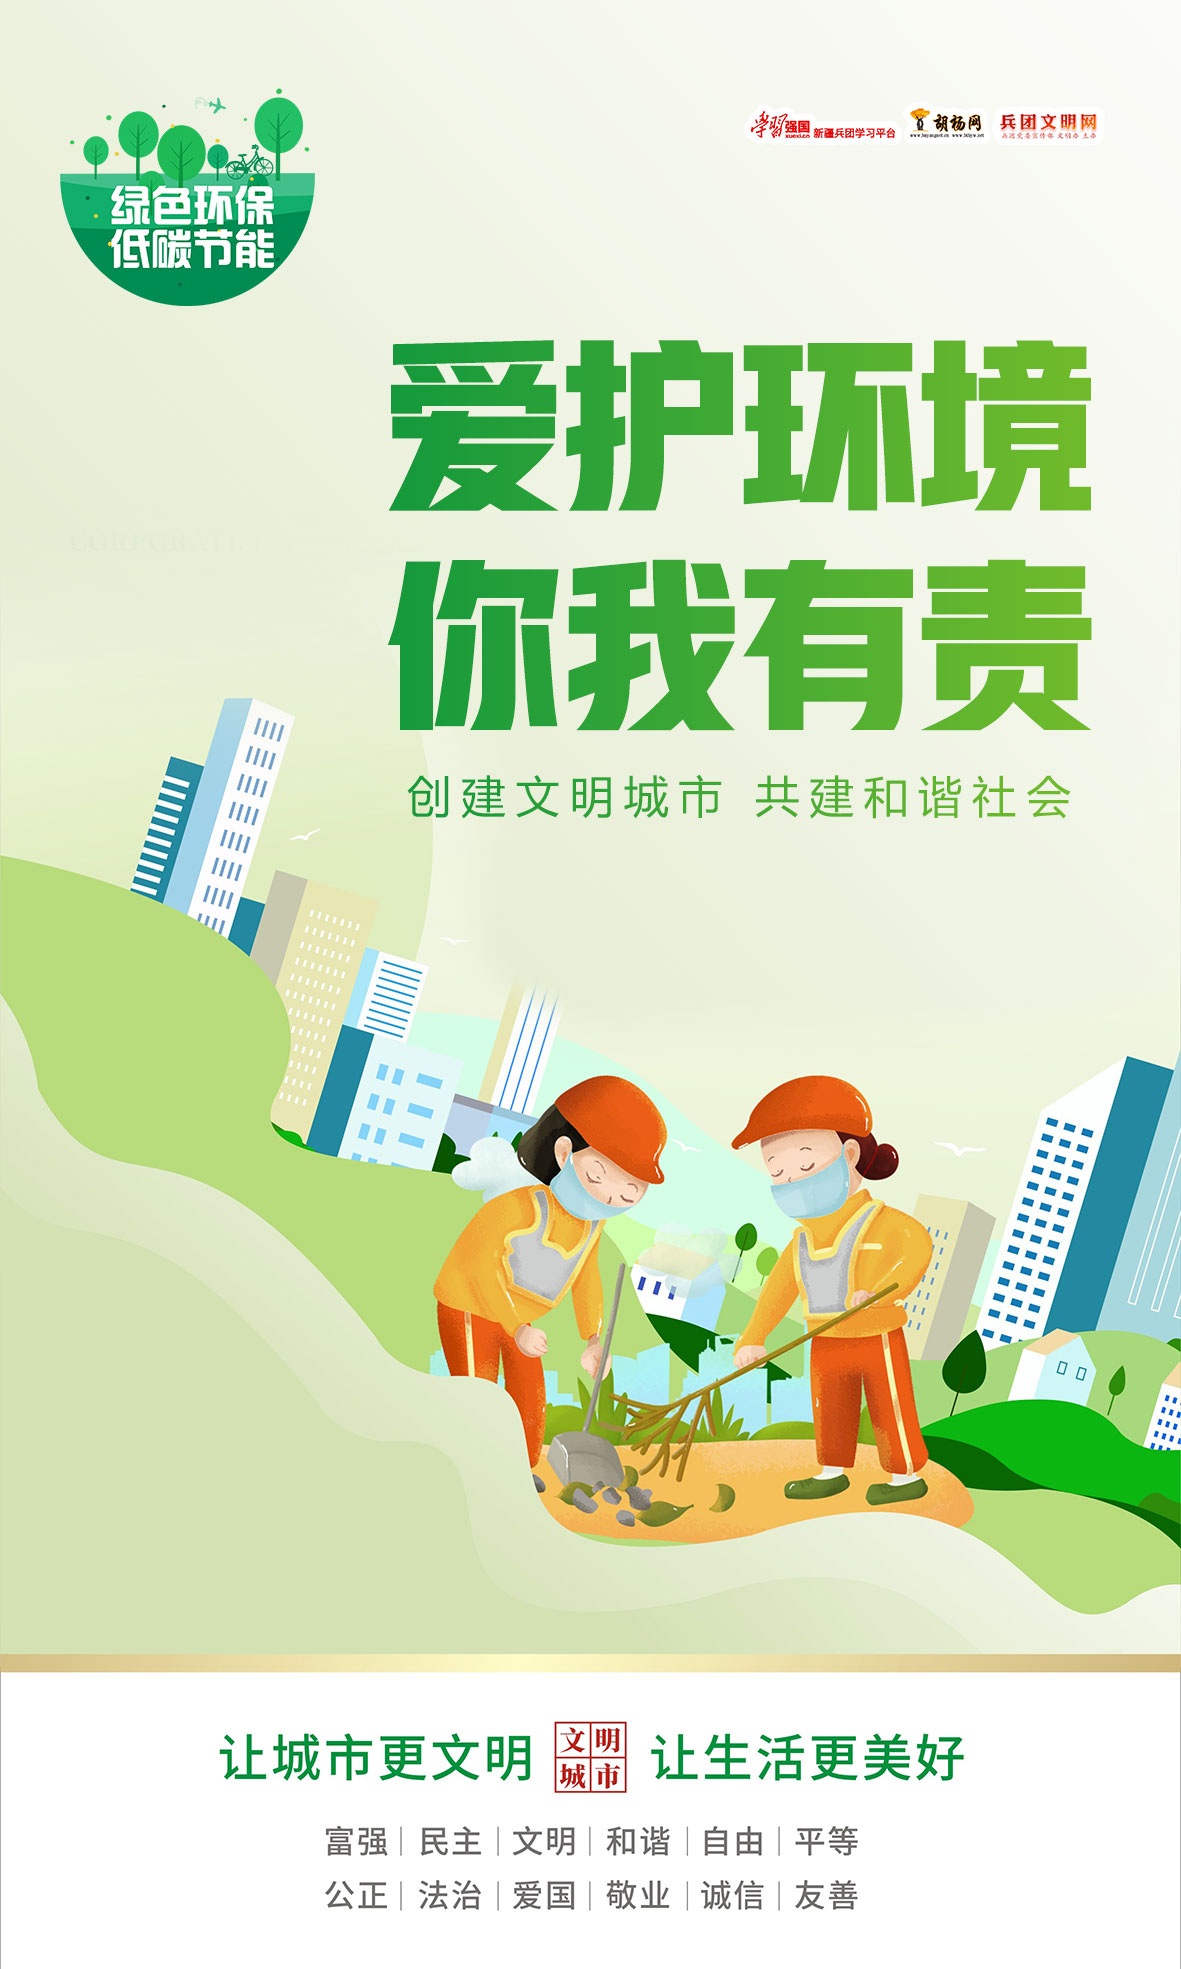 原创海报 | 绿色环保 低碳节能（21）